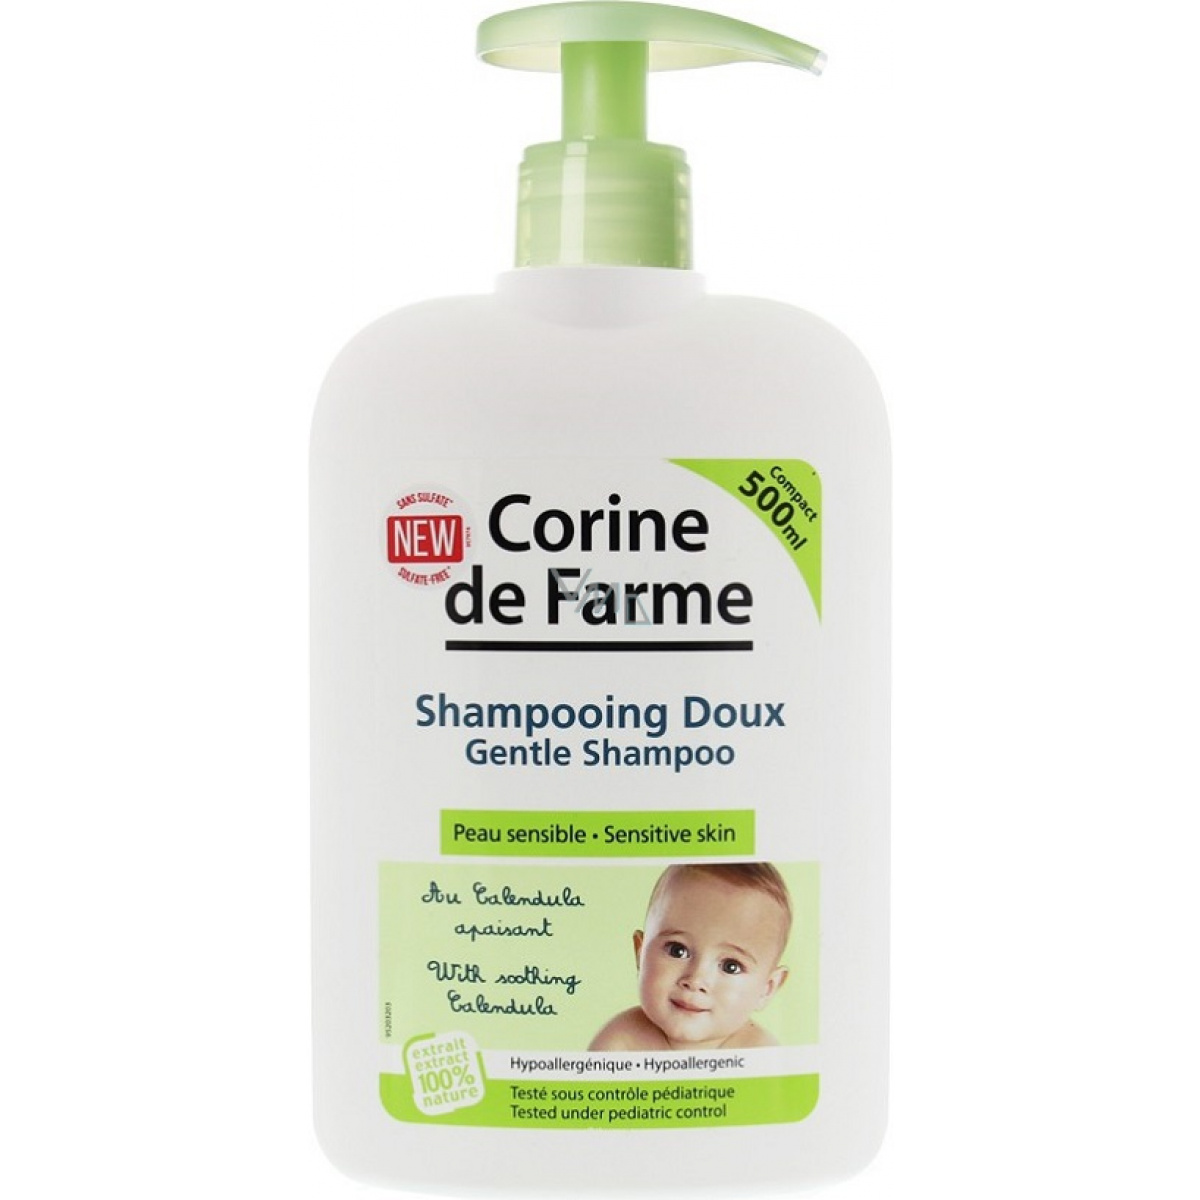 Vente des shampooing bebe en ligne